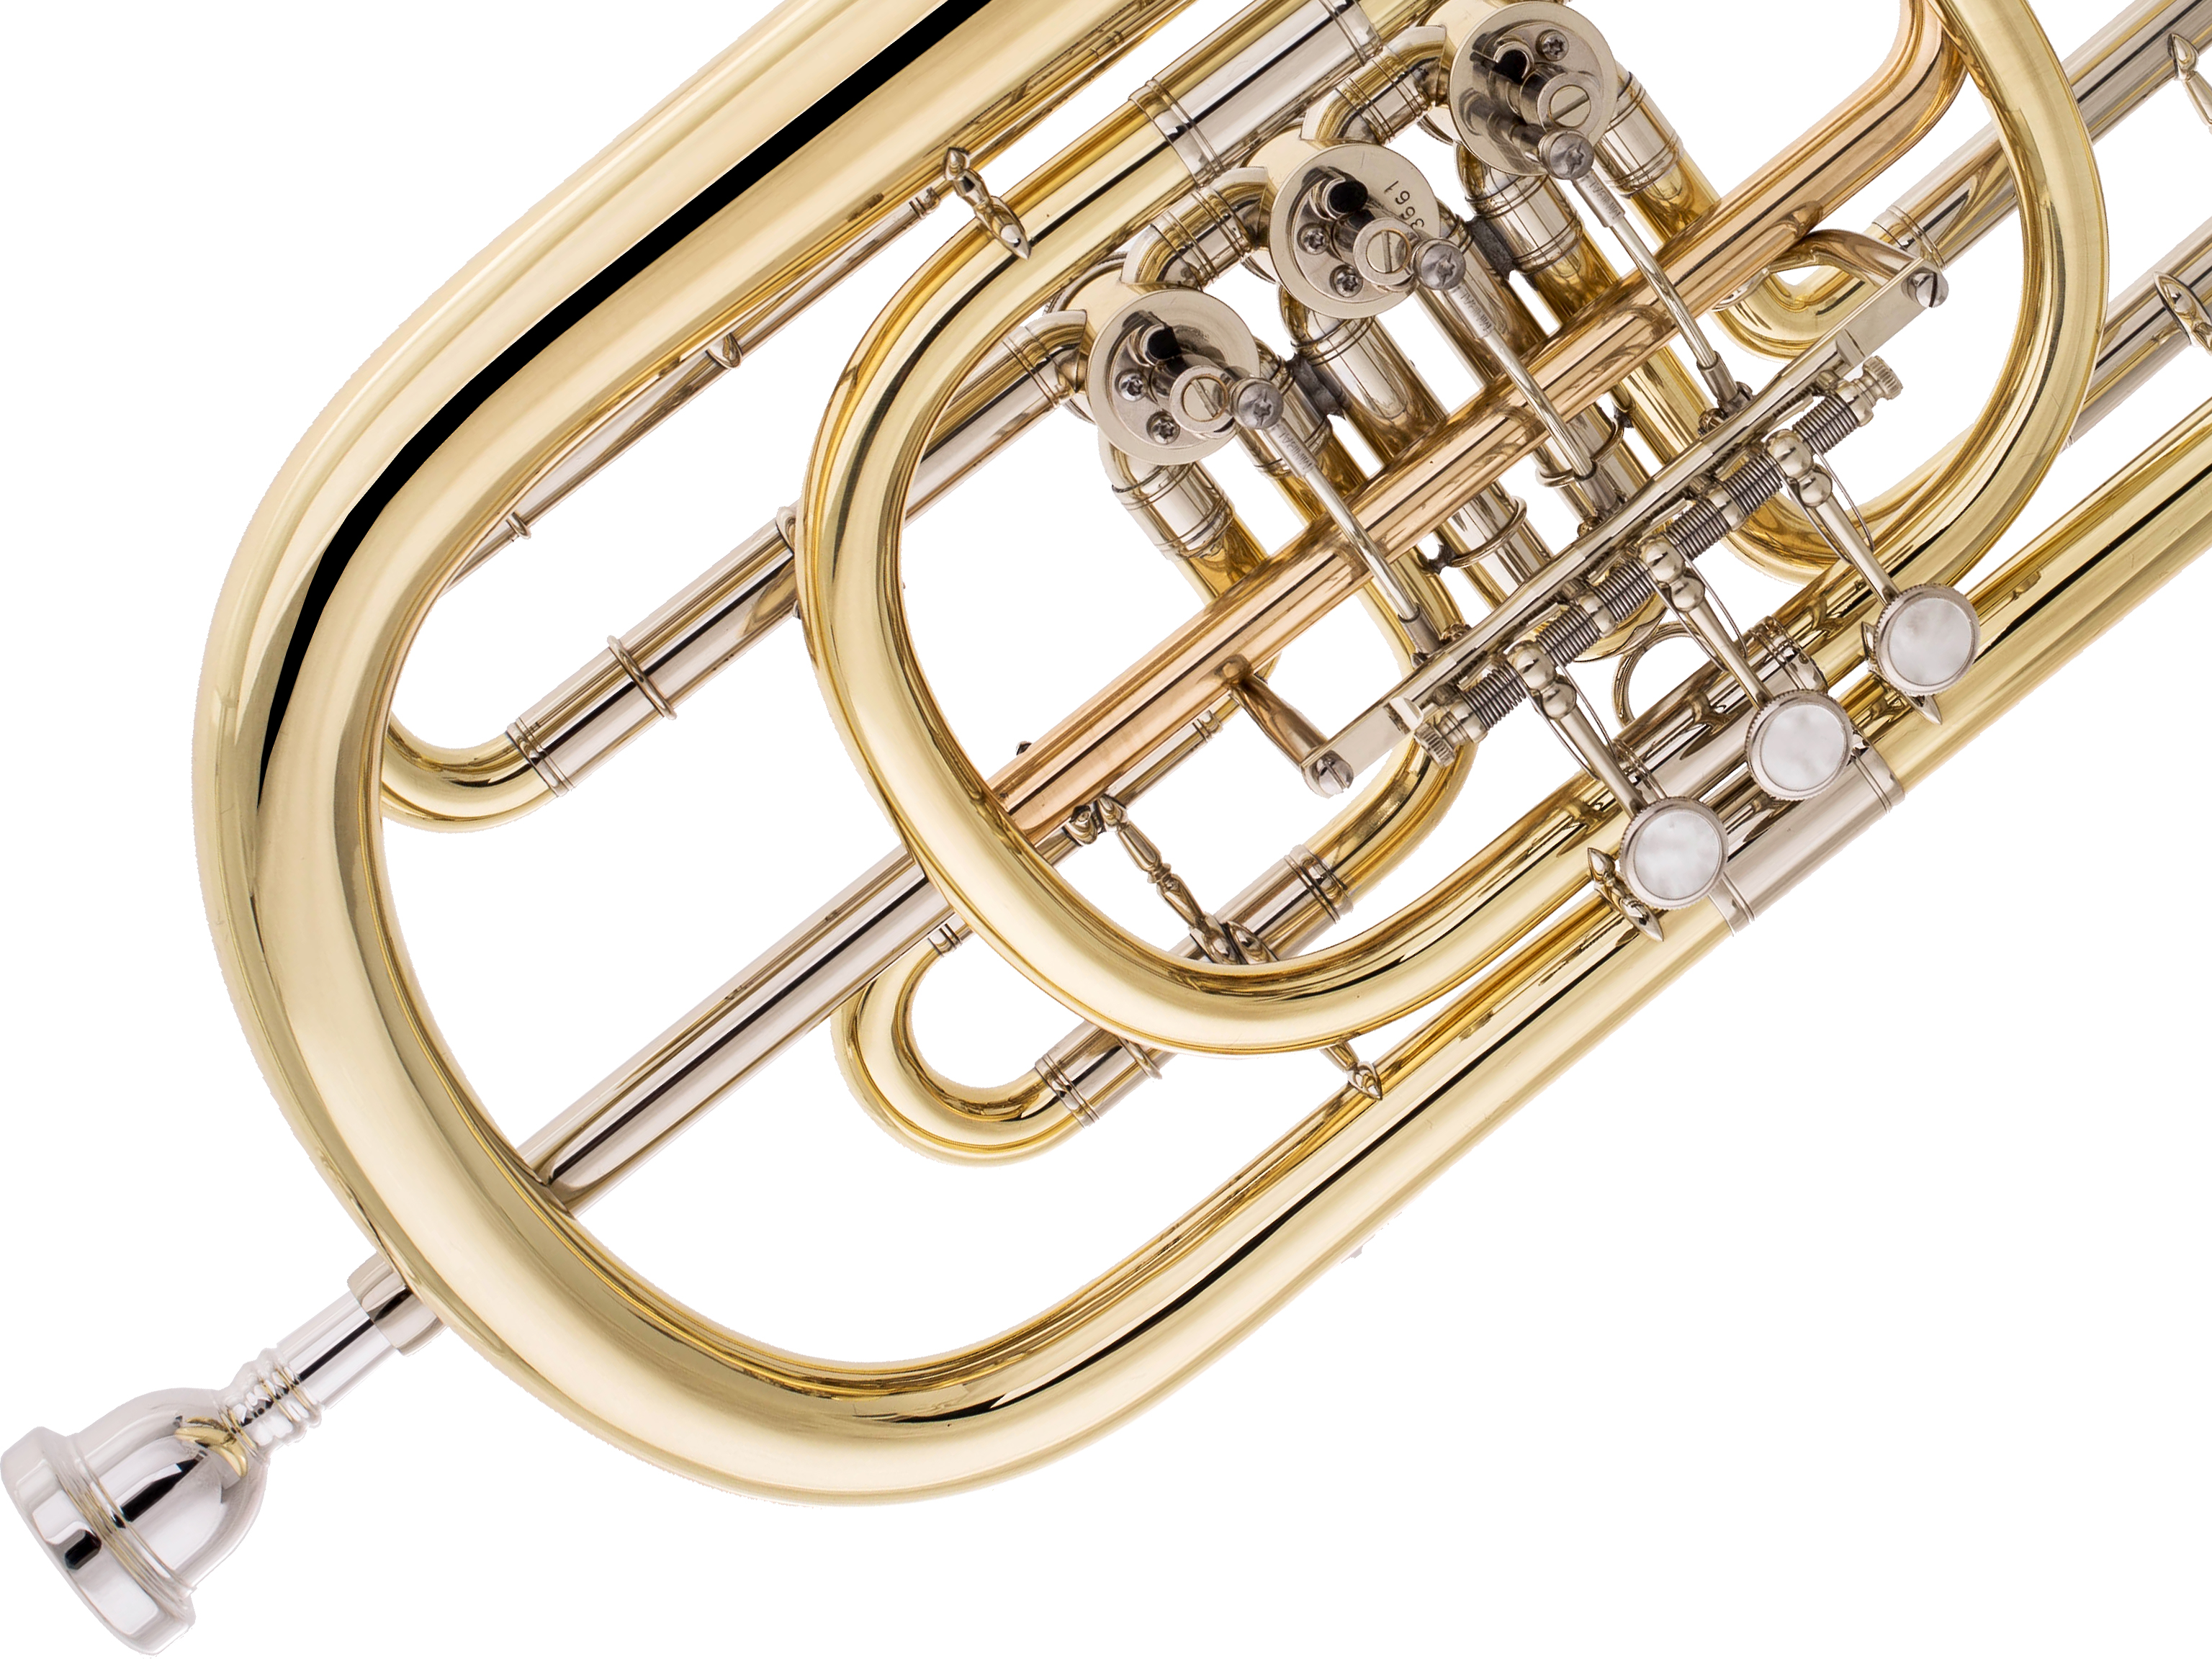 Dotzauer 3055 Basstrompete Messing